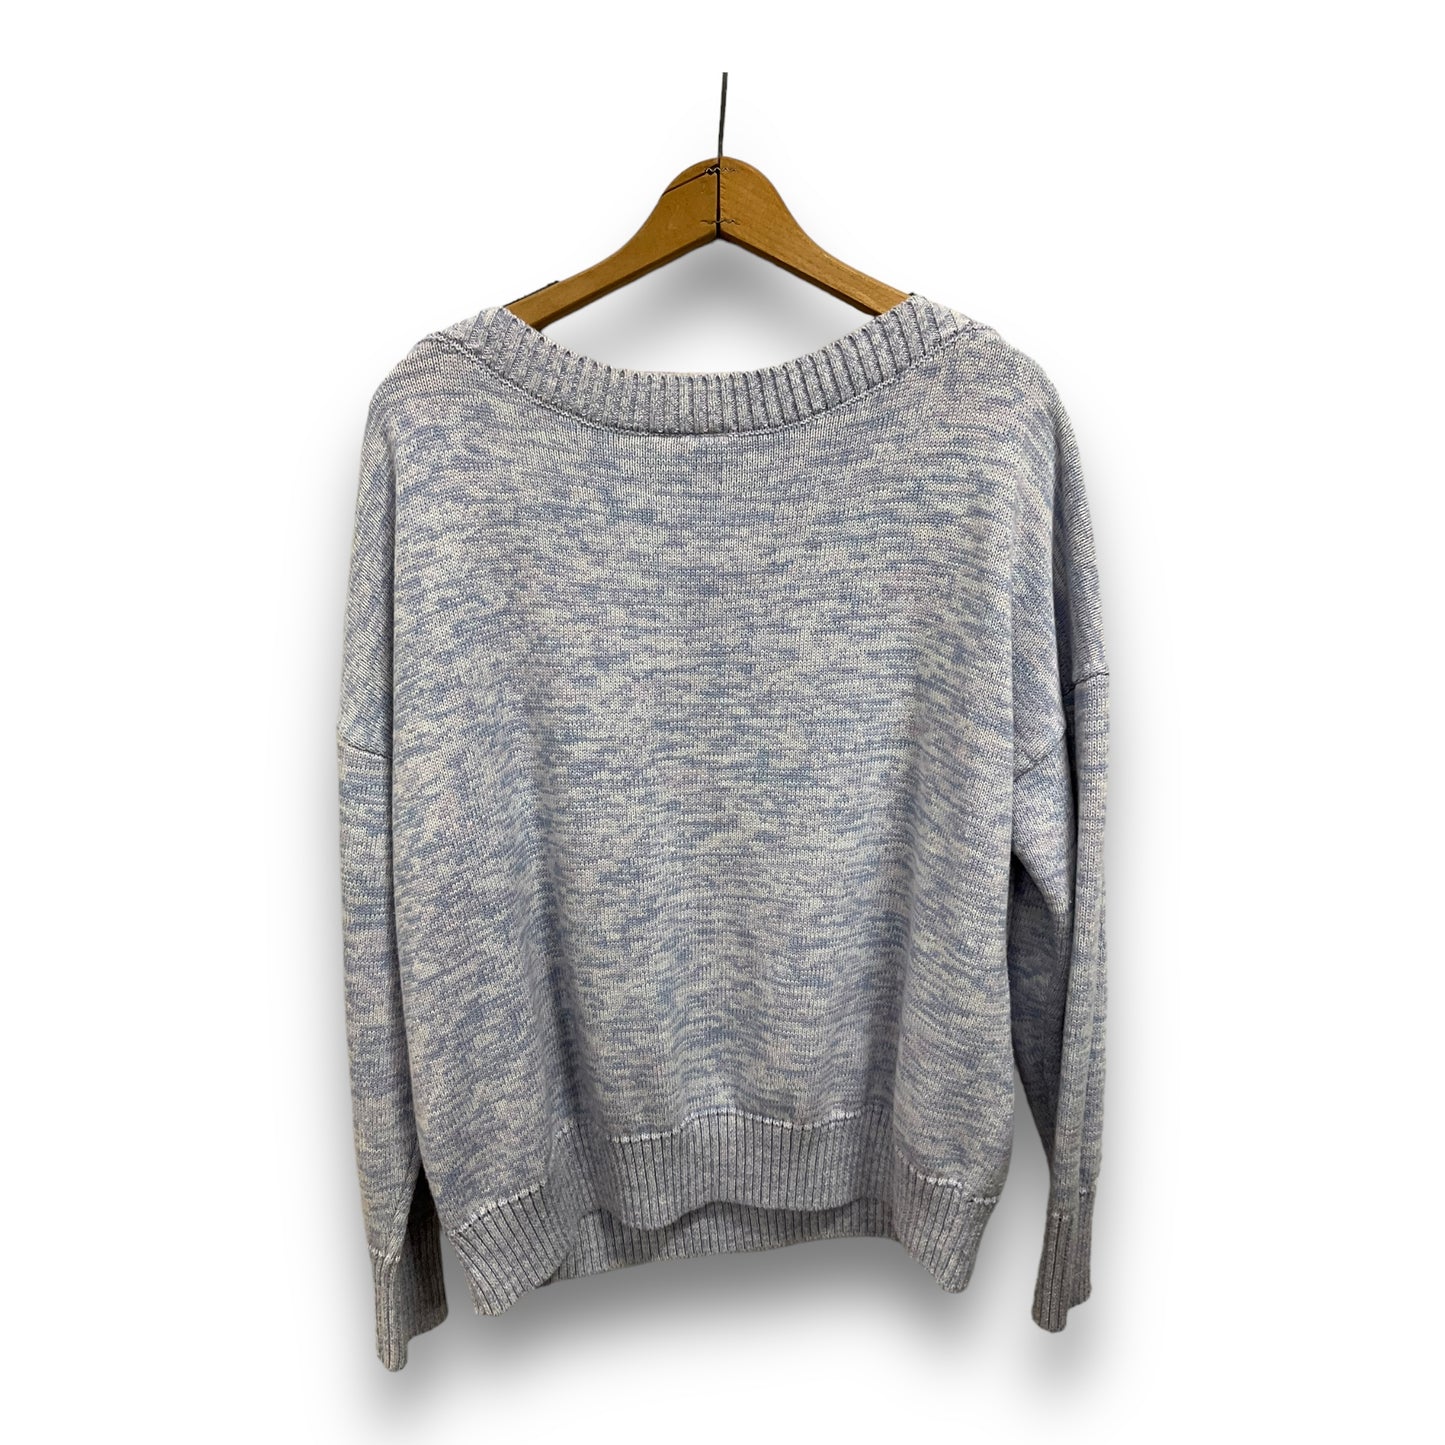 Sweater By Gap  Size: Xxl